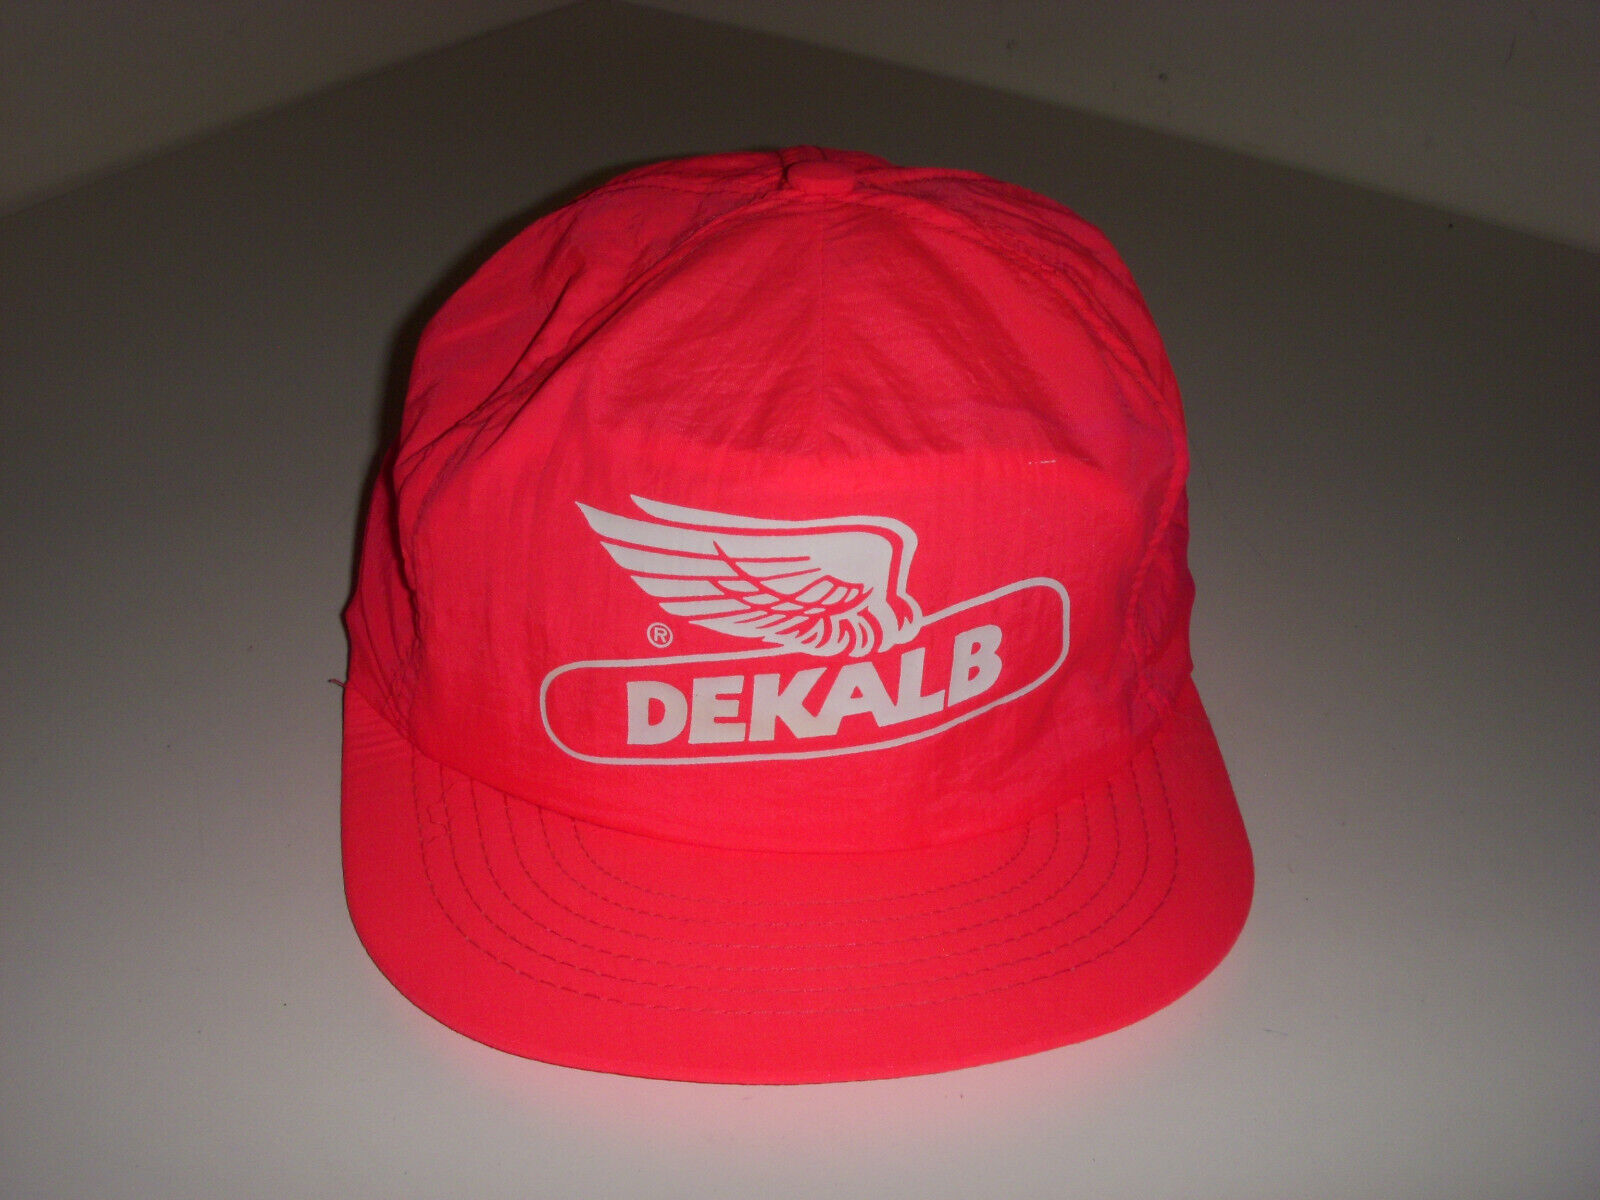 Vintage 80s 90s Dekalb Neon Pink Snapback Trucker Hat Cap Unbranded 